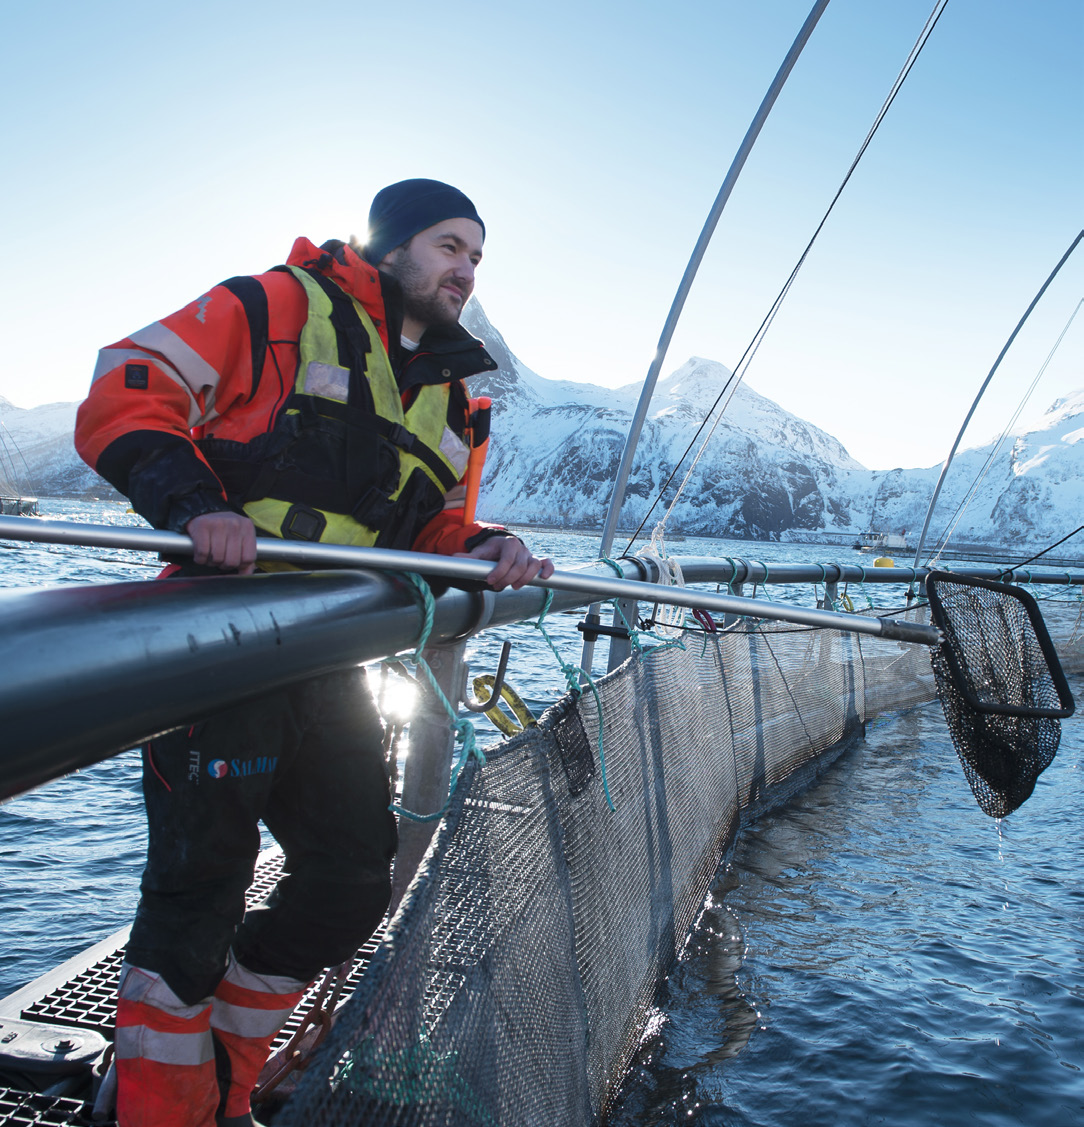 10 11 HAVBRUK OG MILJØ Bærekraft og miljøhensyn er helt fundamentale forutsetninger for norsk havbruksnæring.